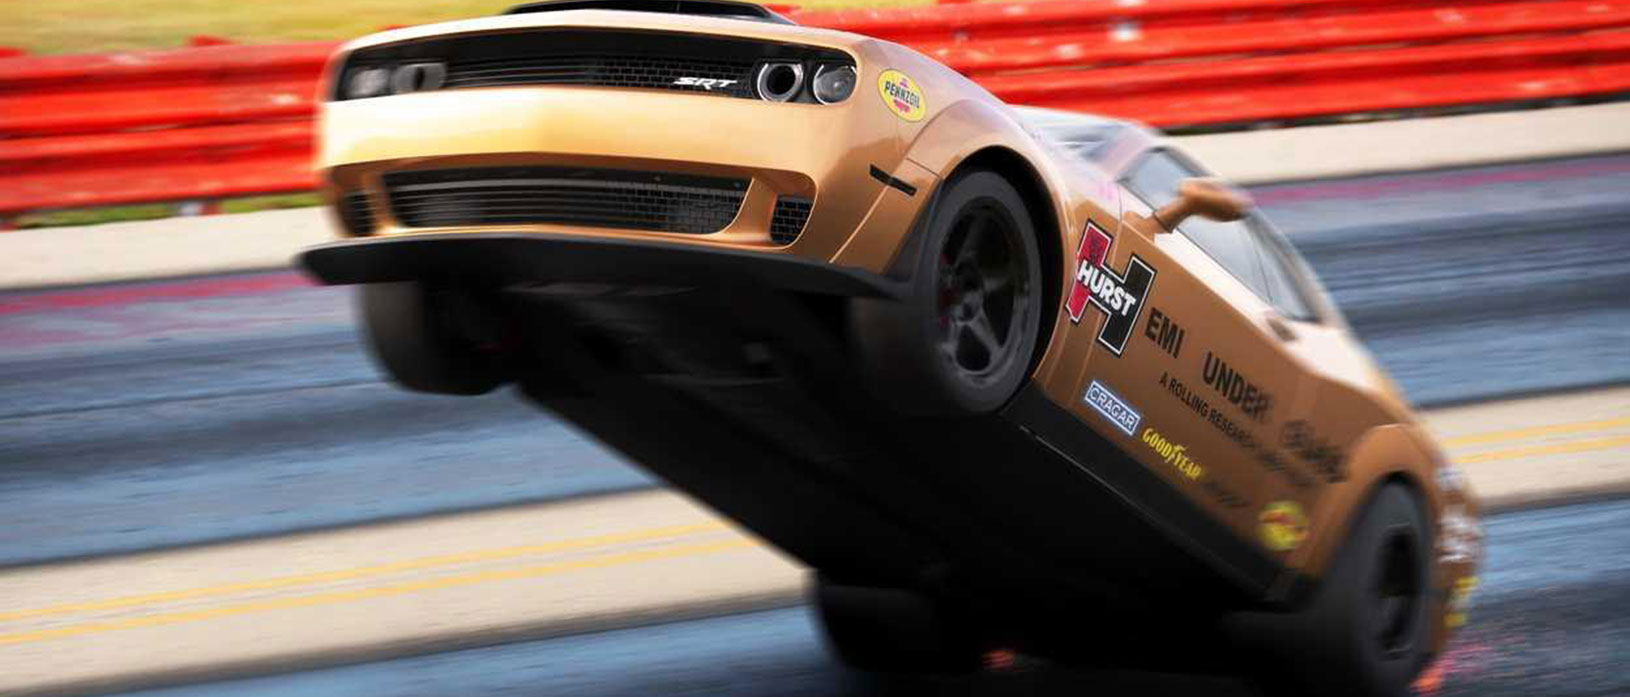 Dodge SRT Challenger on back wheels racing